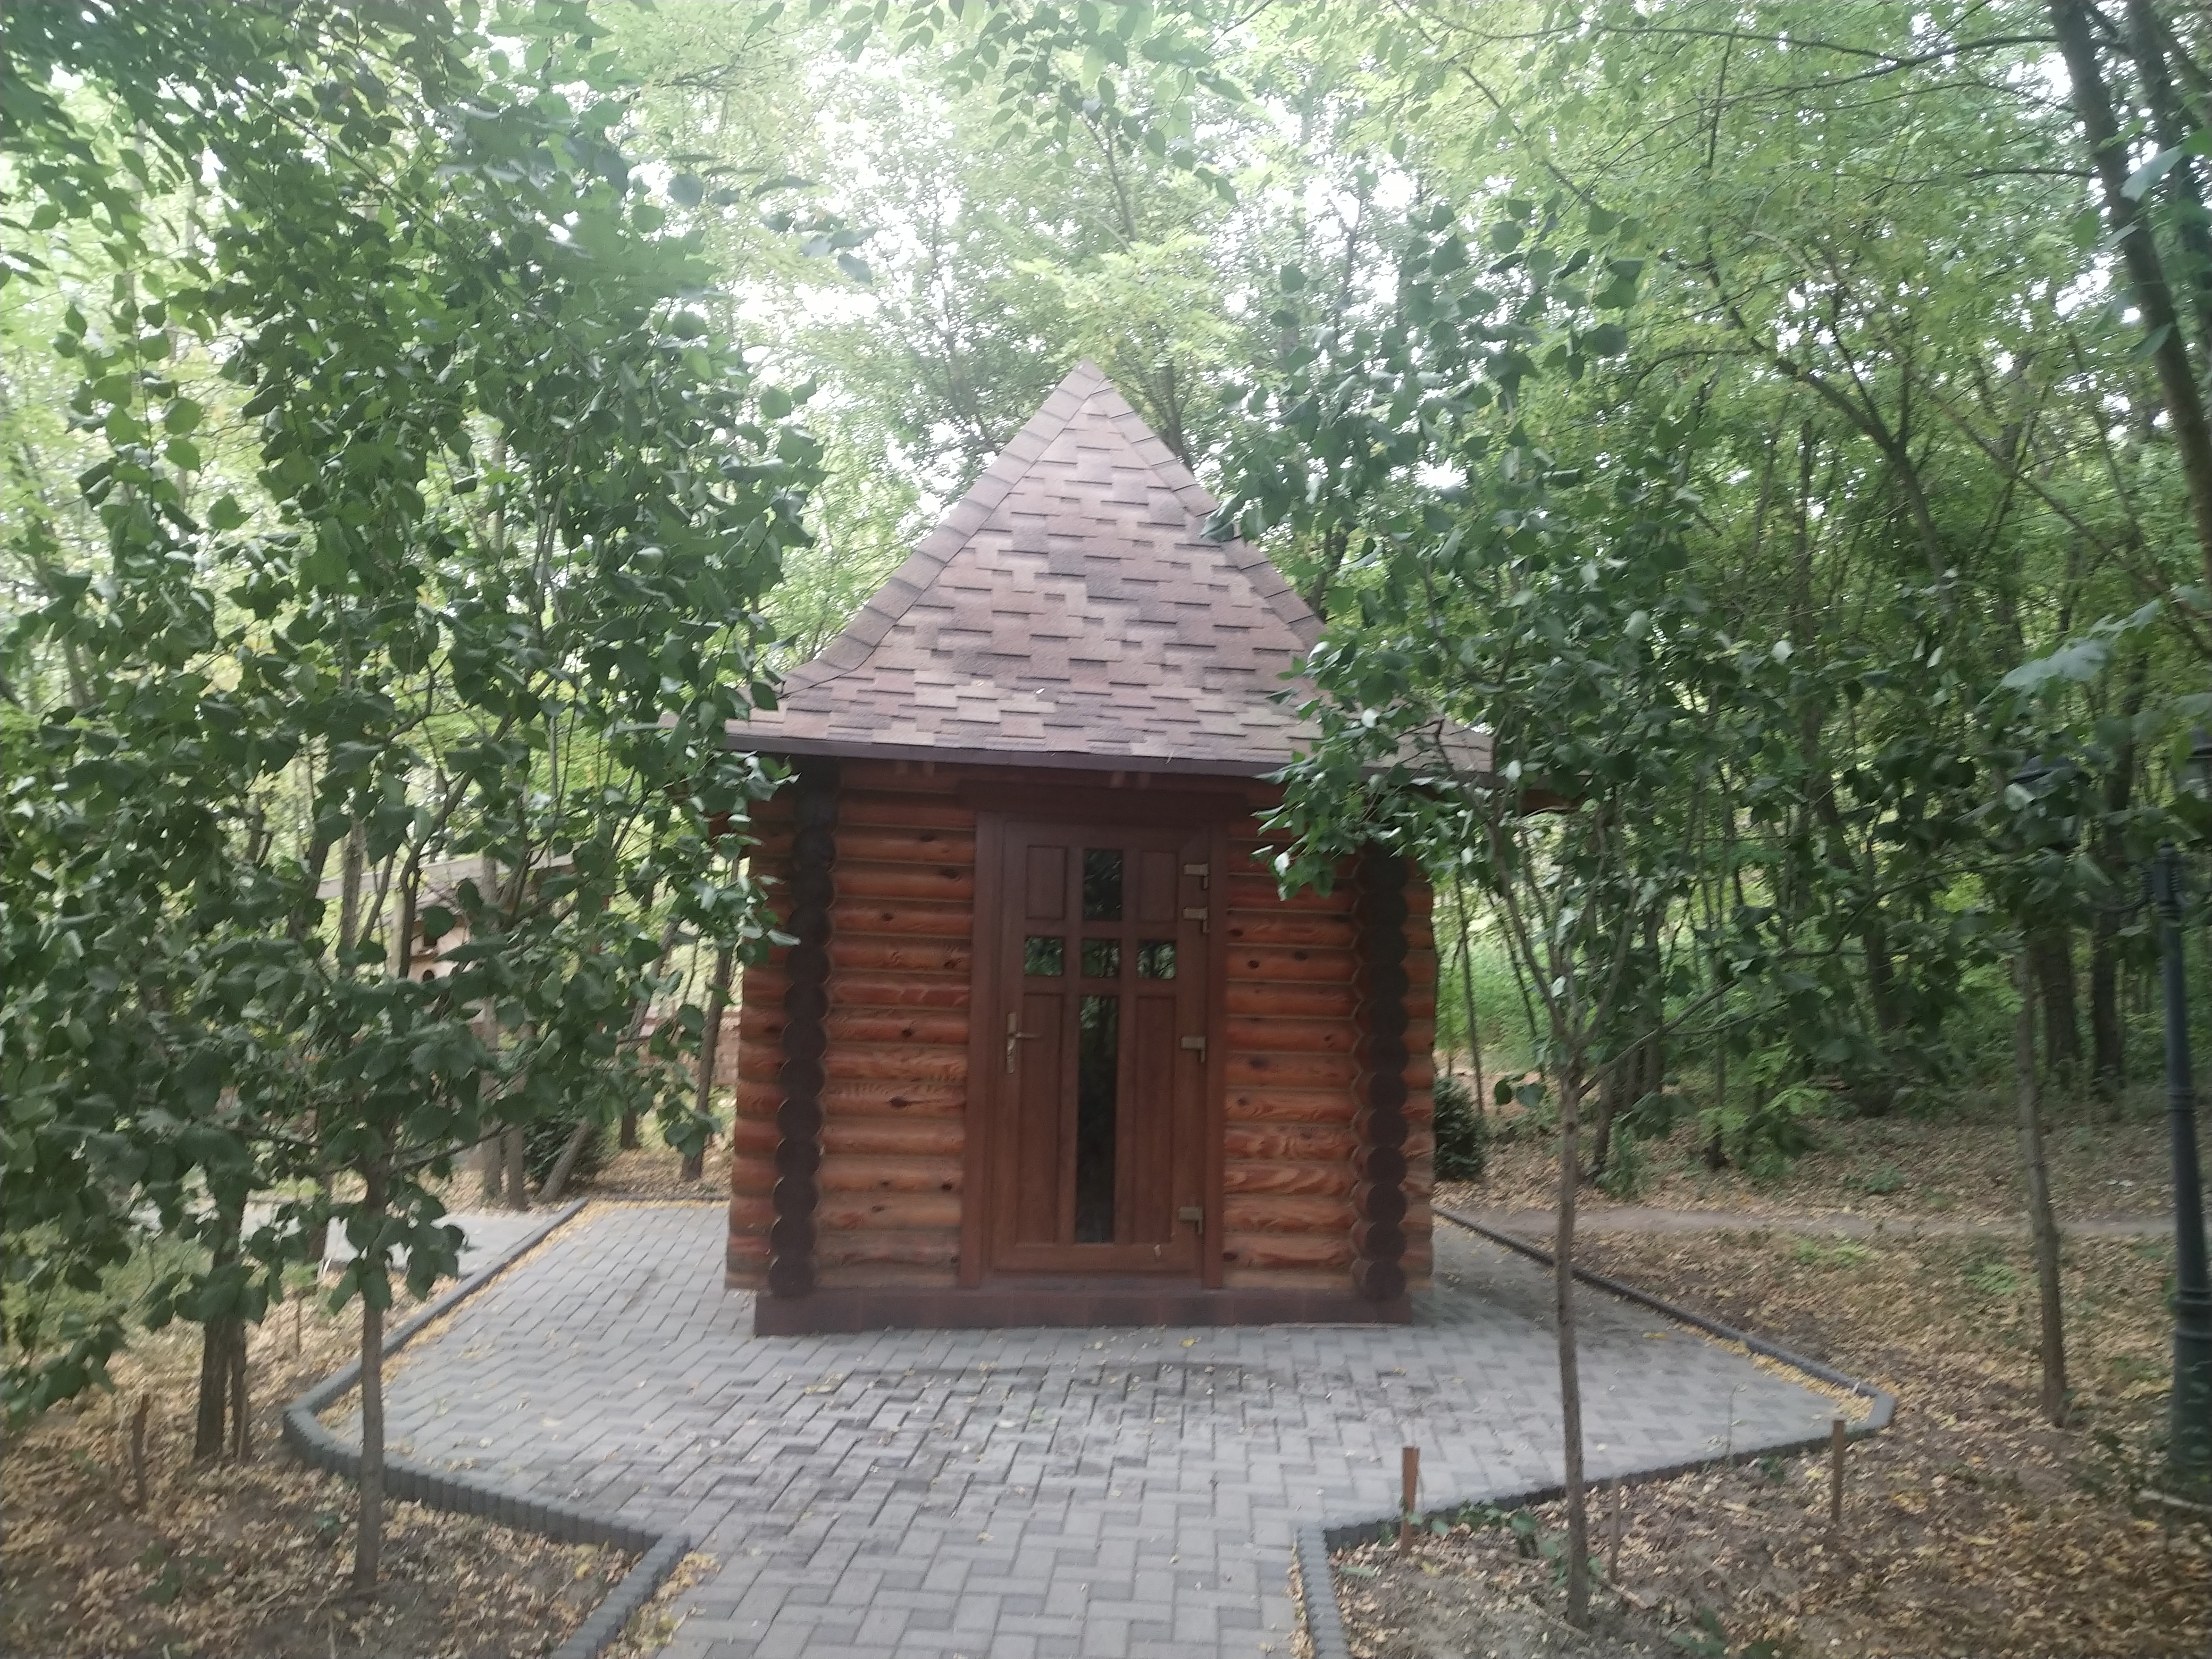 MD, Район Criuleni, Satul Magdacesti, Loc pentru rugăciune la International Park